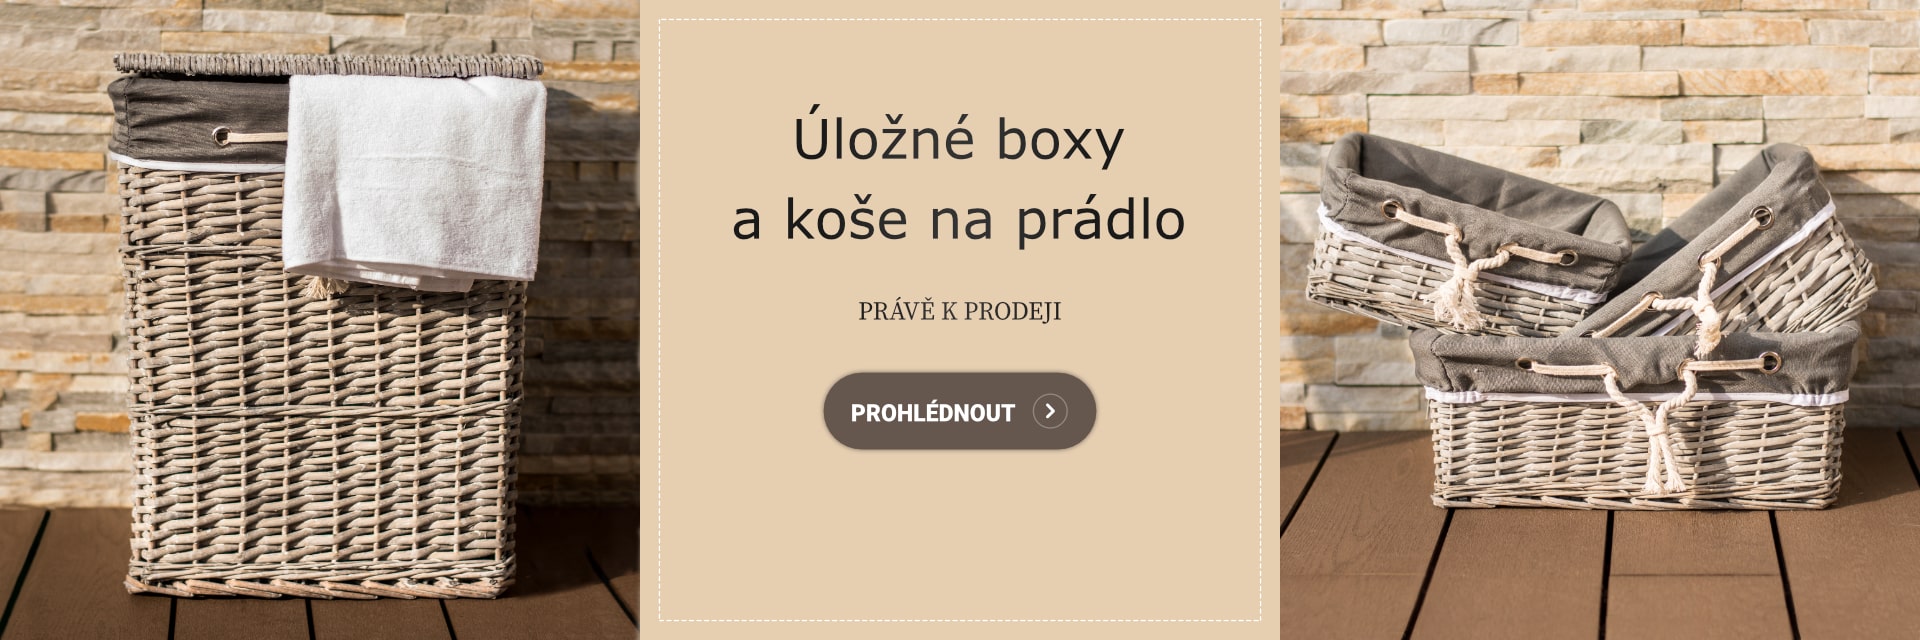 Koše a boxy - cz